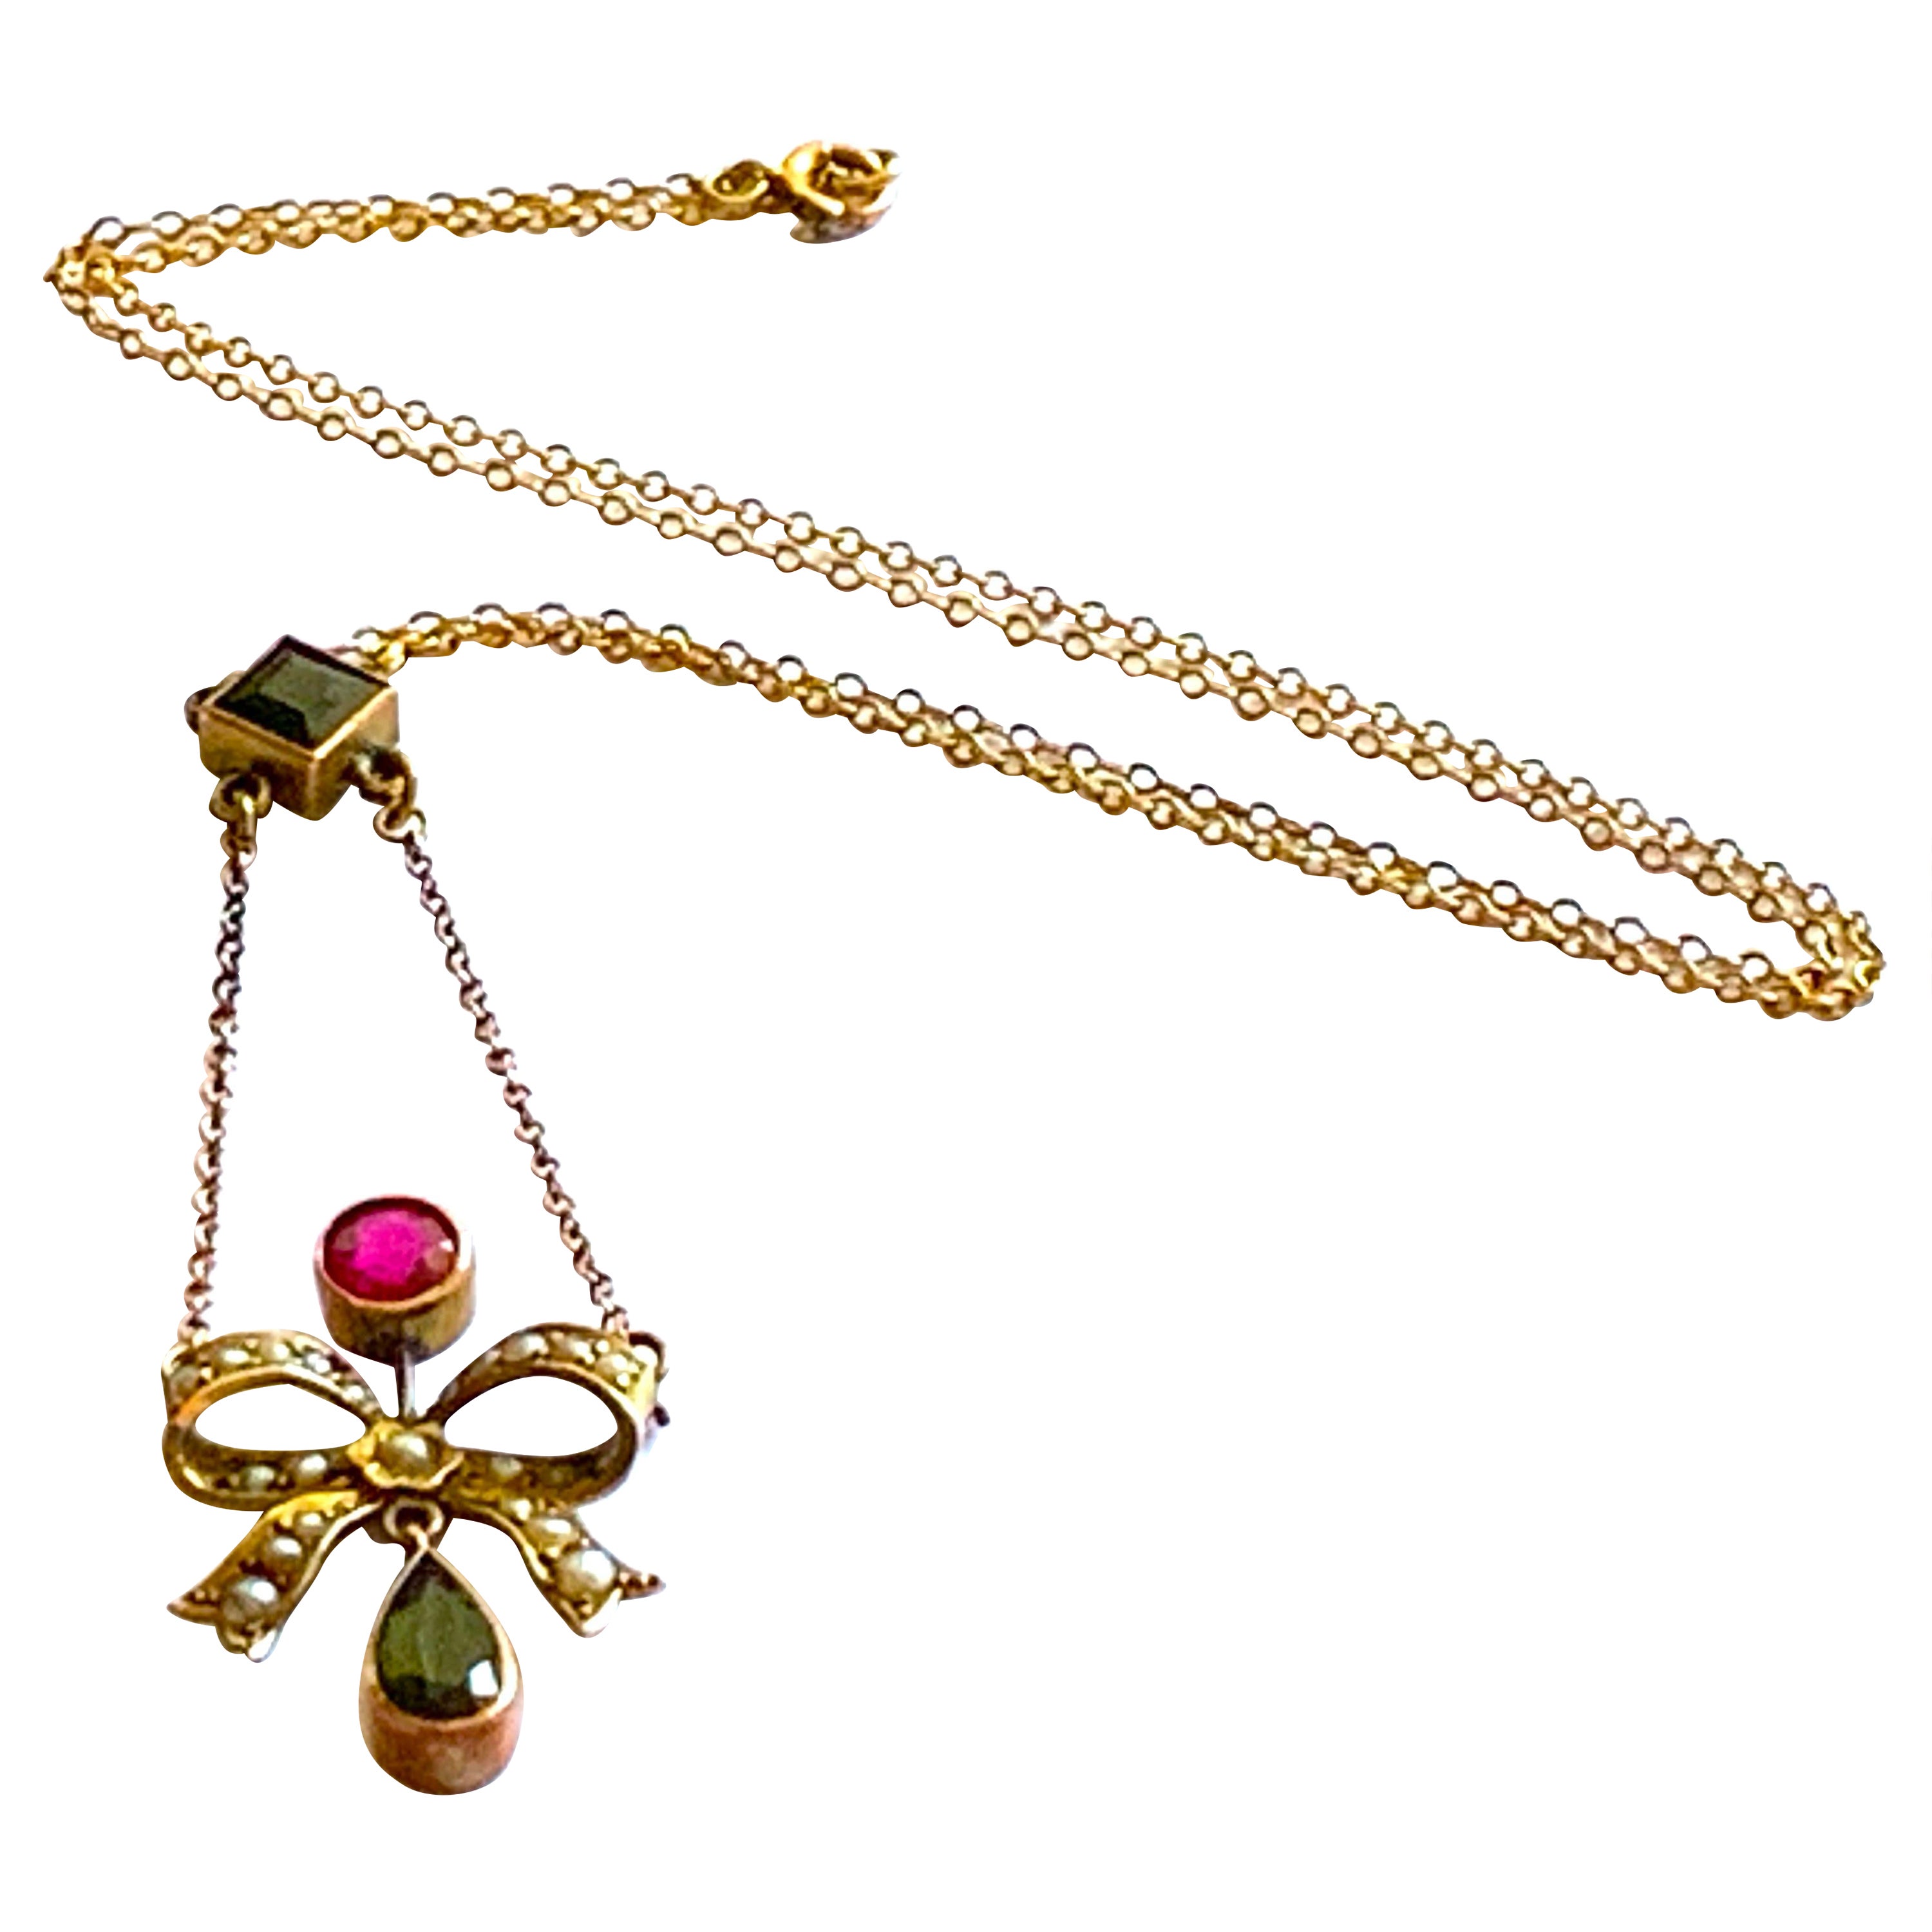 9ct Gold Antike Schleife Choker Halskette